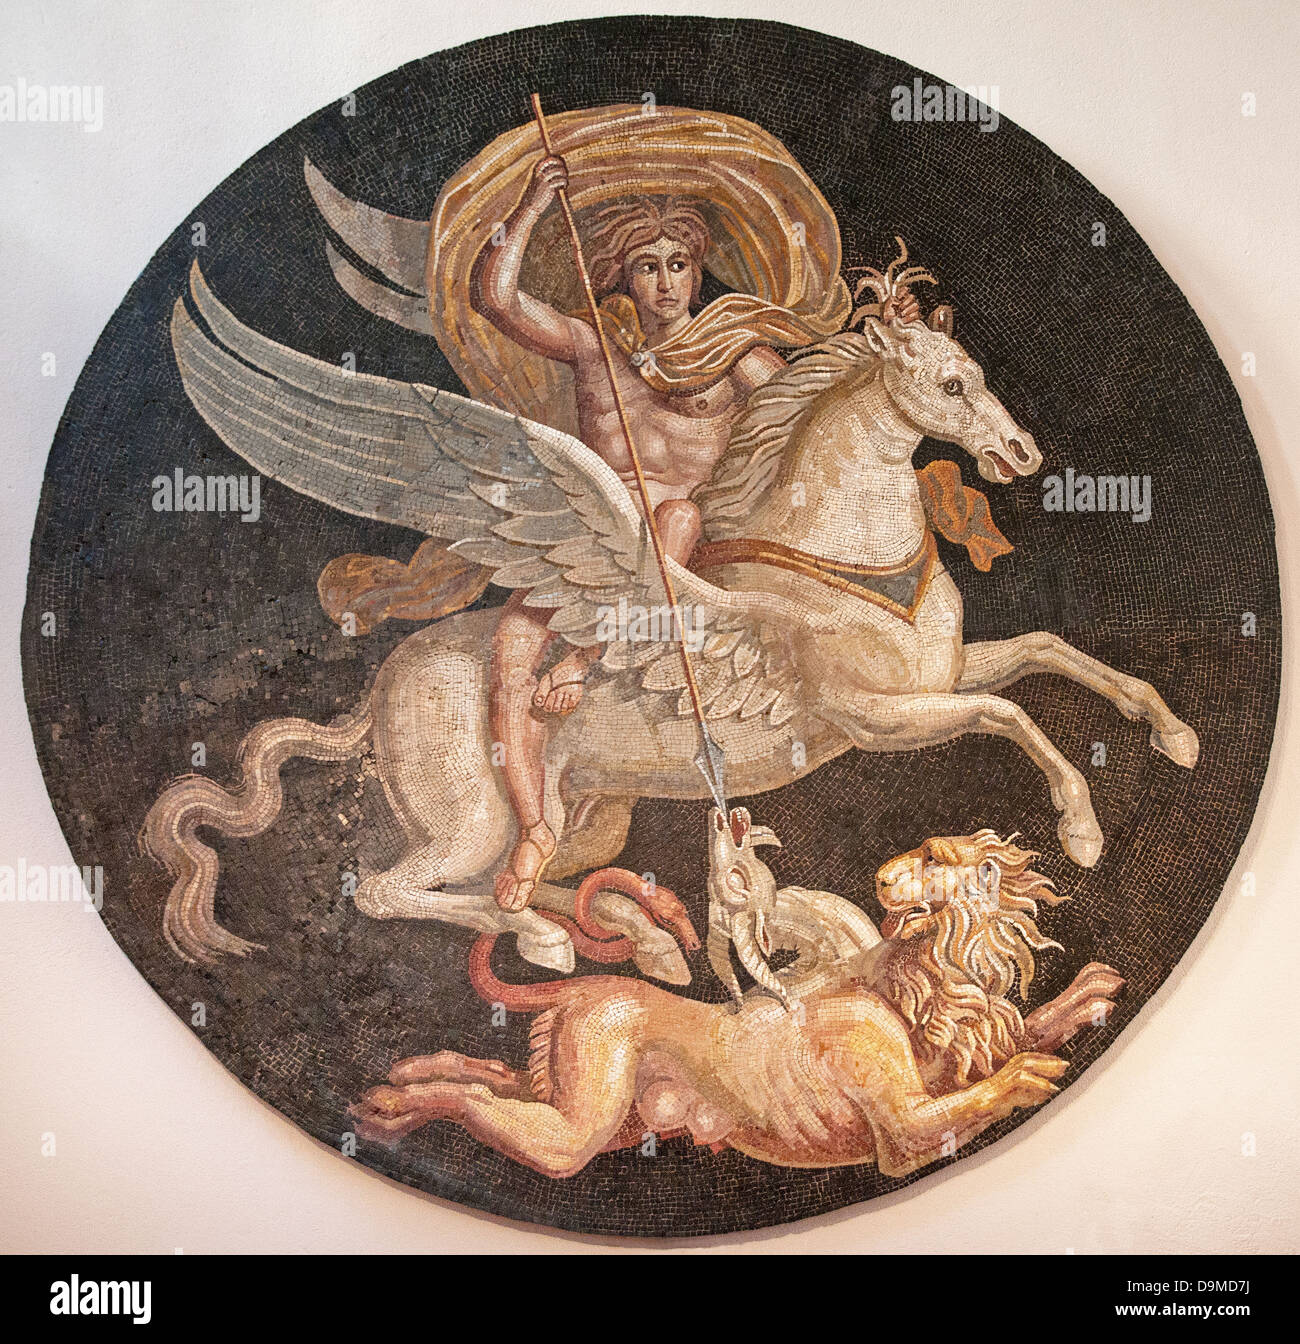 Mosaïque romaine de l'antique héros grec Bellerofon killing monster Chimera affiché dans Autun Autun France Banque D'Images